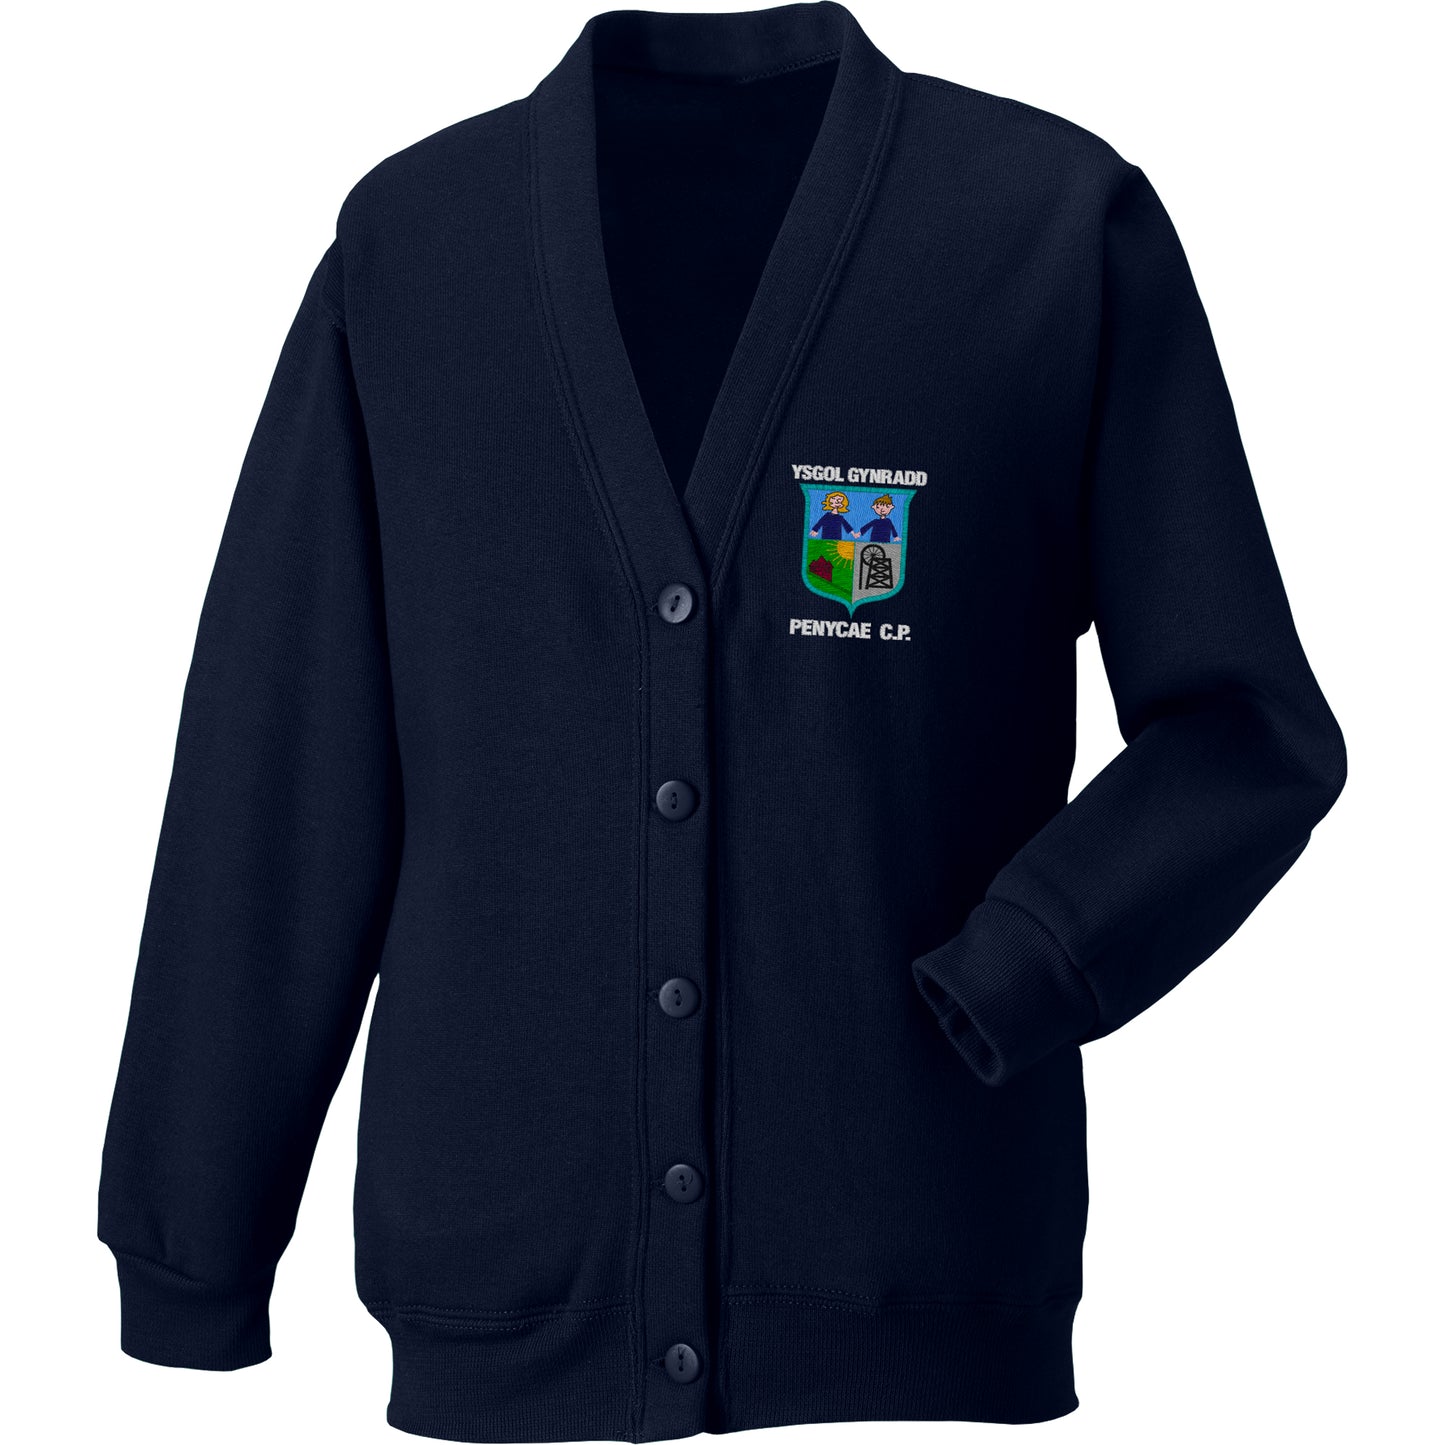 Ysgol Penycae School Cardigan supplied by Ourschoolwear of Wrexham